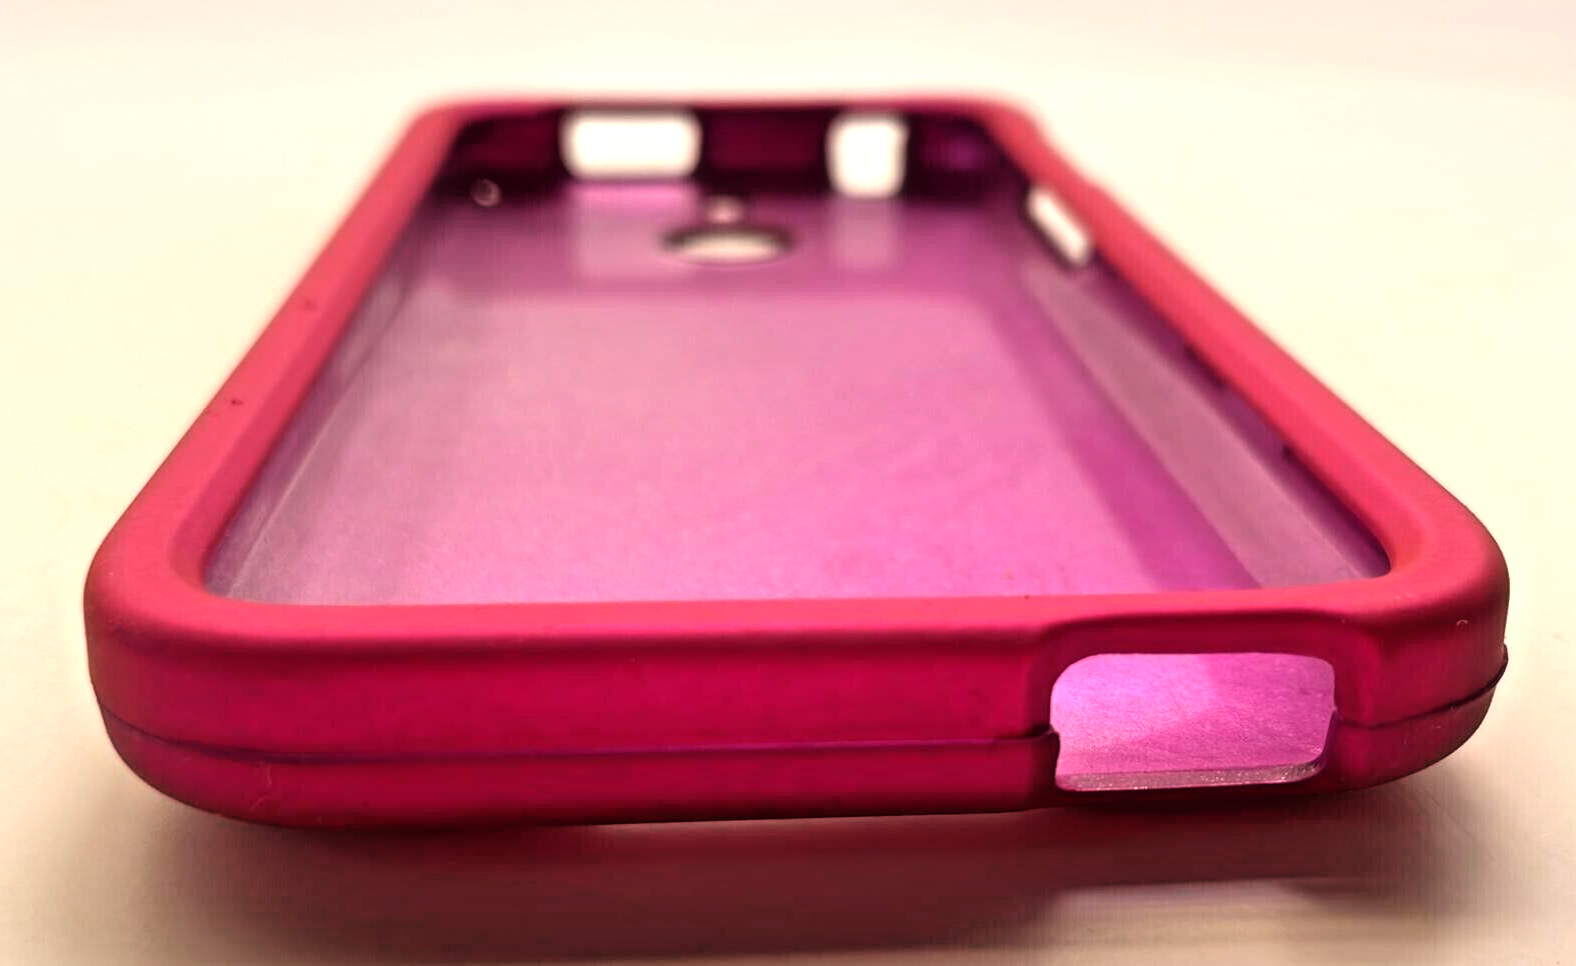 Sonne Premium Case for HTC Desire 510, Pink Sonne - фотография #6